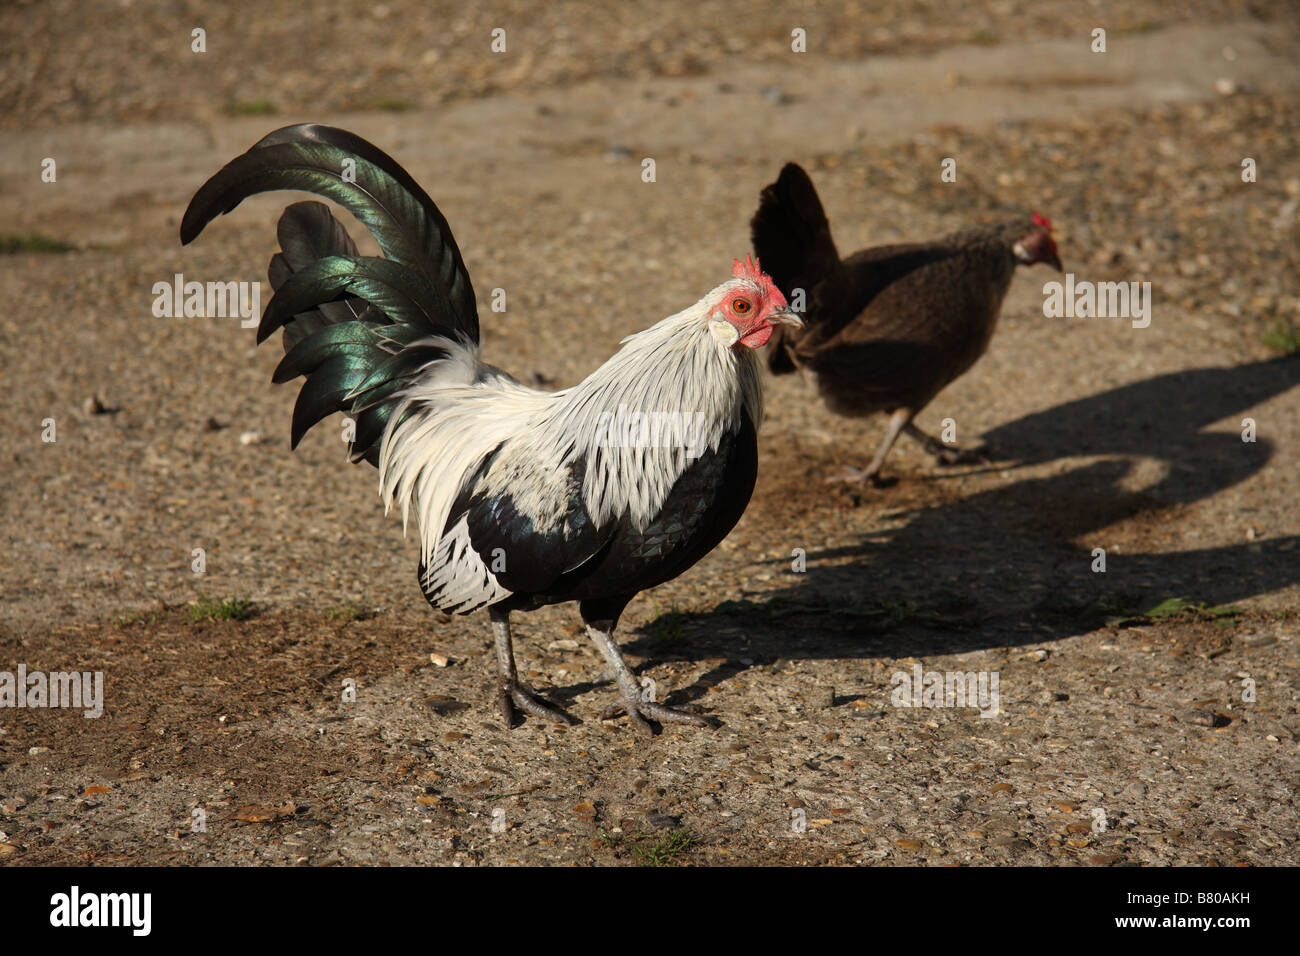 Silver Néerlandais Poulet, cockeral avec poule dans l'arrière, sur une cour de ferme, de béton c'est un oiseau noir et blanc de volaille Banque D'Images